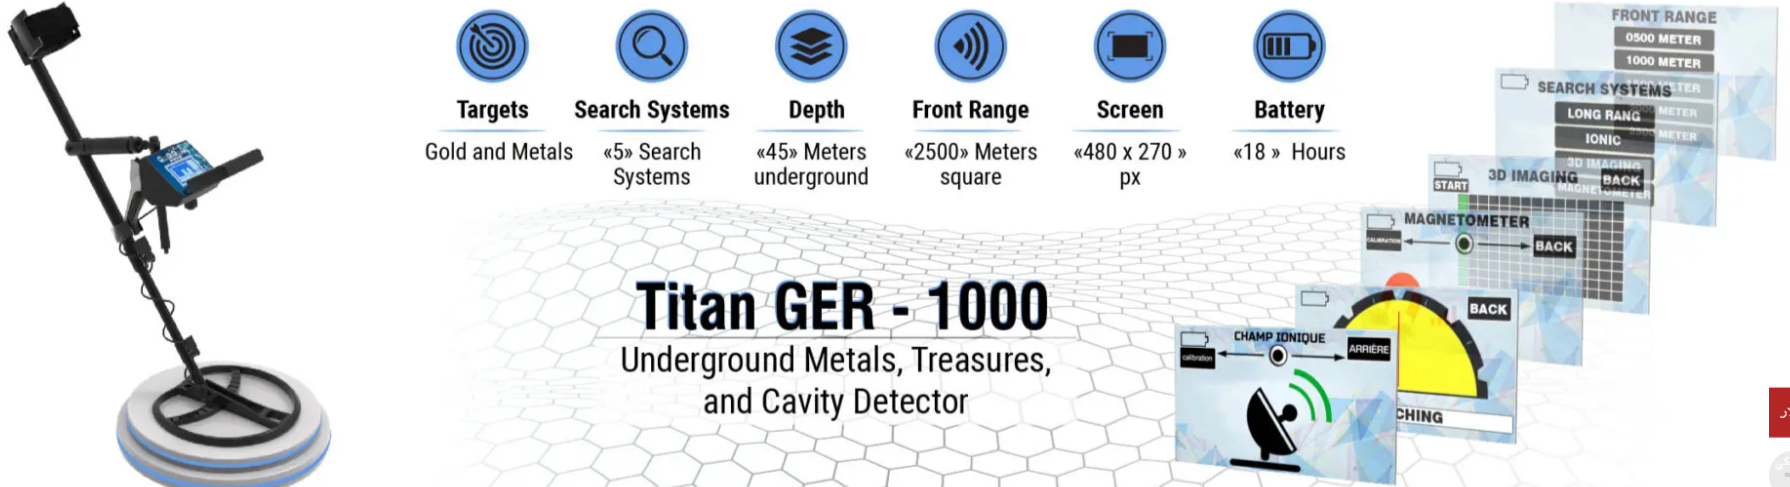 تيتان جير 1000  جهاز متعدد الأنظمة لكشف الذهب Do